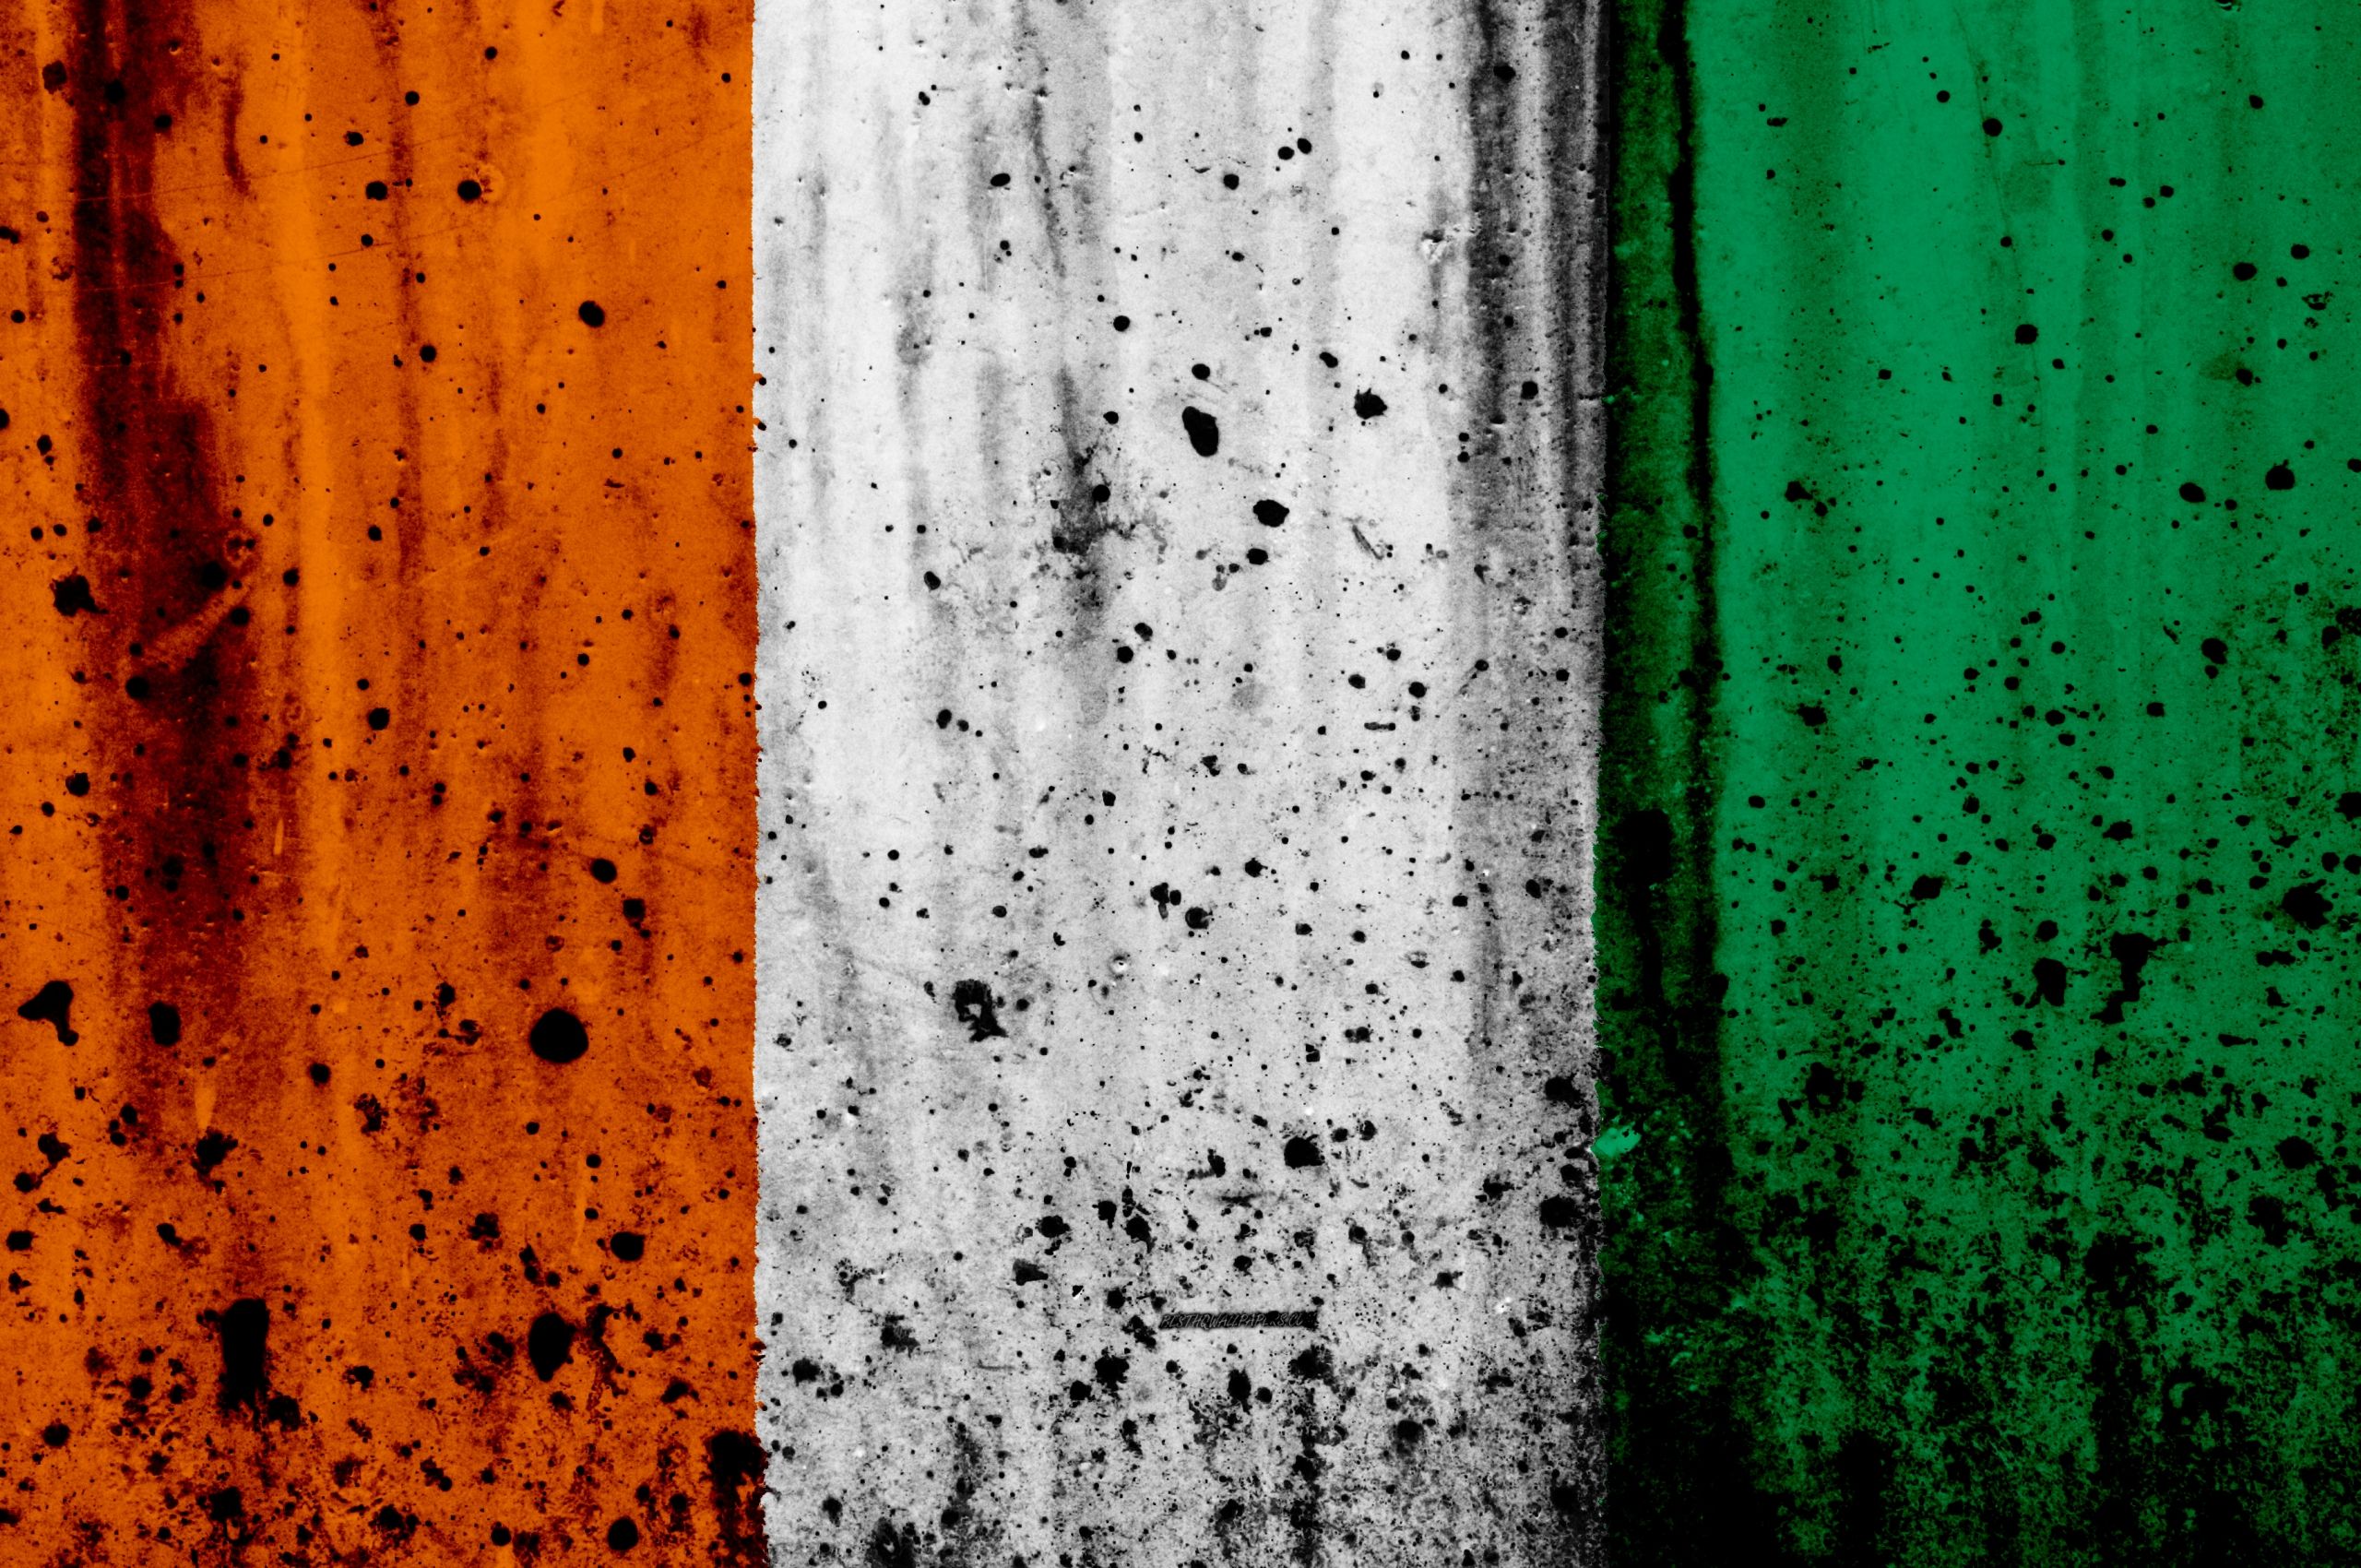 Free download Download wallpaper Cote d Ivoire flag 4k grunge